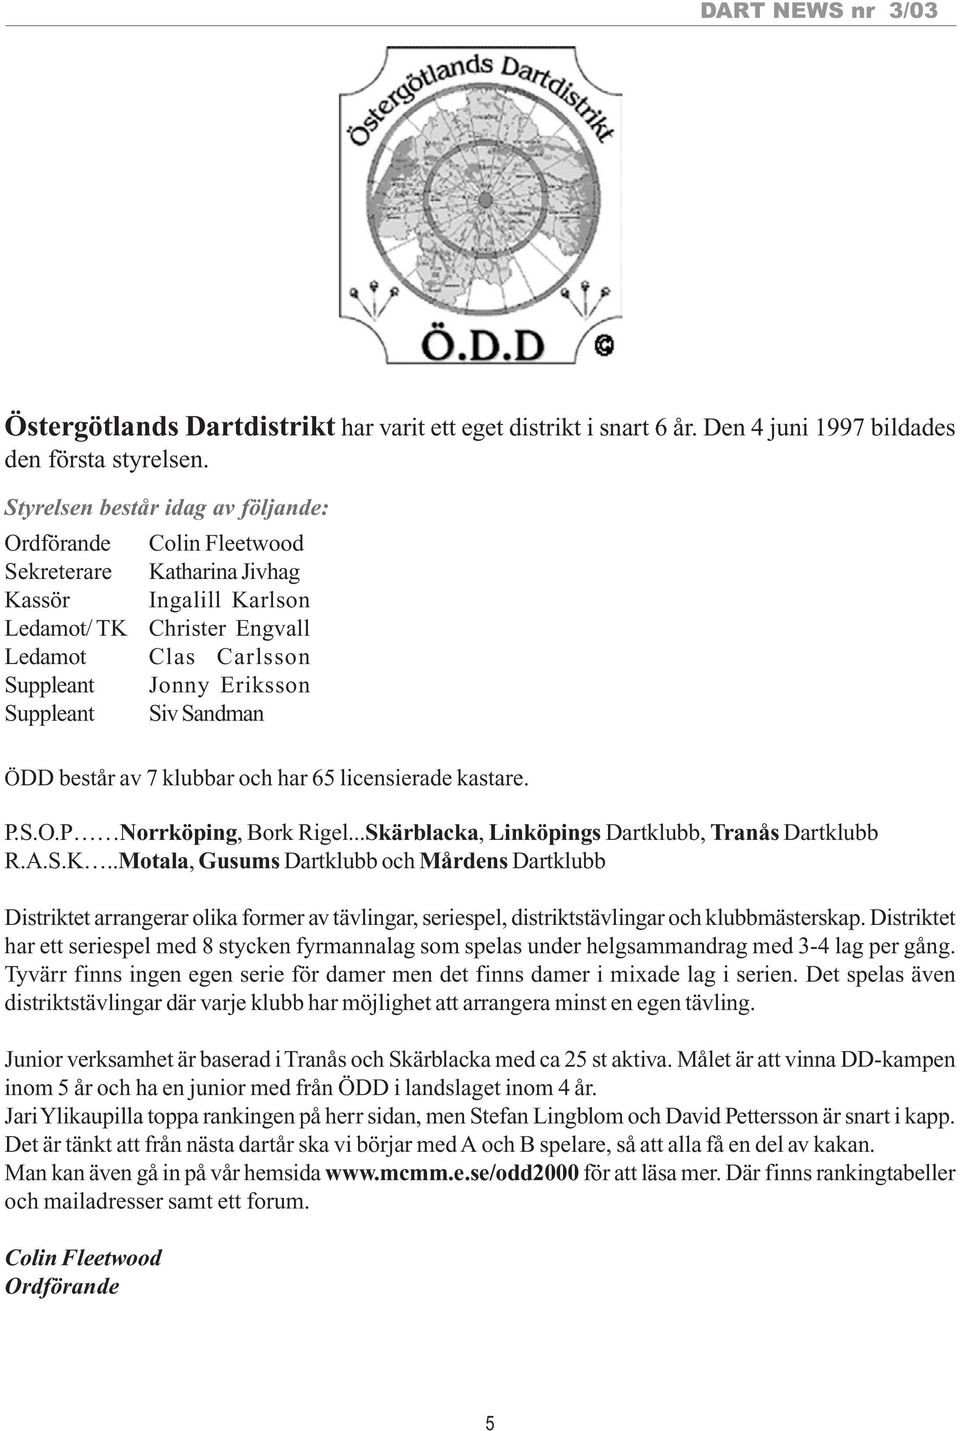 Suppleant Siv Sandman ÖDD består av 7 klubbar och har 65 licensierade kastare. P.S.O.P Norrköping, Bork Rigel...Skärblacka, Linköpings Dartklubb, Tranås Dartklubb R.A.S.K.